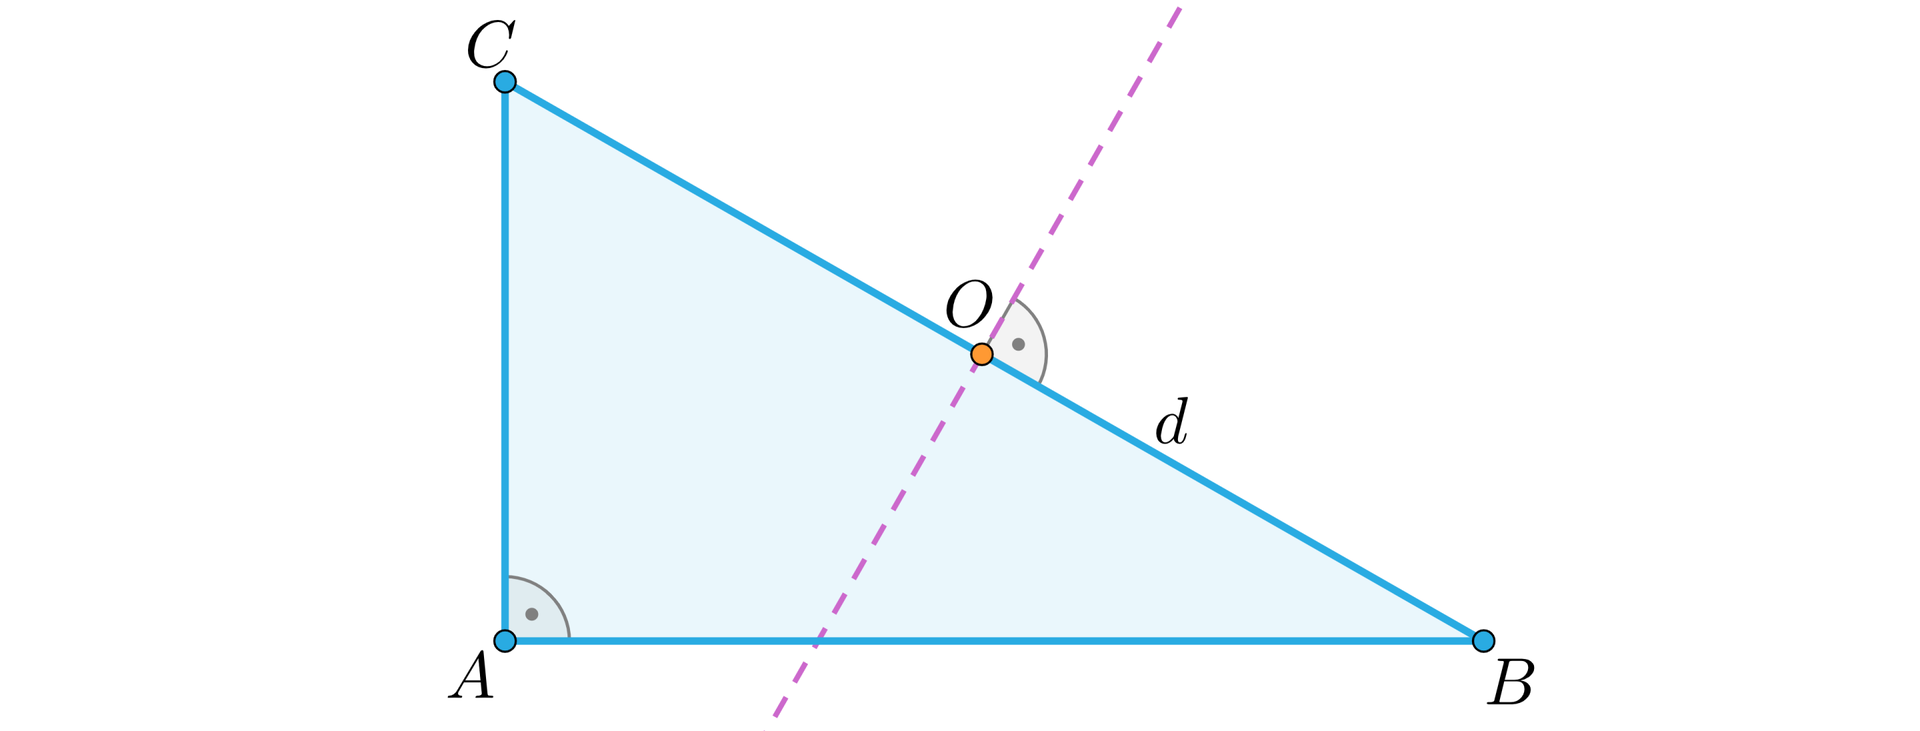 Ilustracja przedstawia trójkąt prostokątny A B C, gdzie kąt BAC jest kątem prostym. Na przeciwprostokątnej BC zaznaczono punkt O. Przez punkt O linią przerywaną poprowadzono prostą prostopadłą do punktu BC. Odcinek PB podpisano literą d.